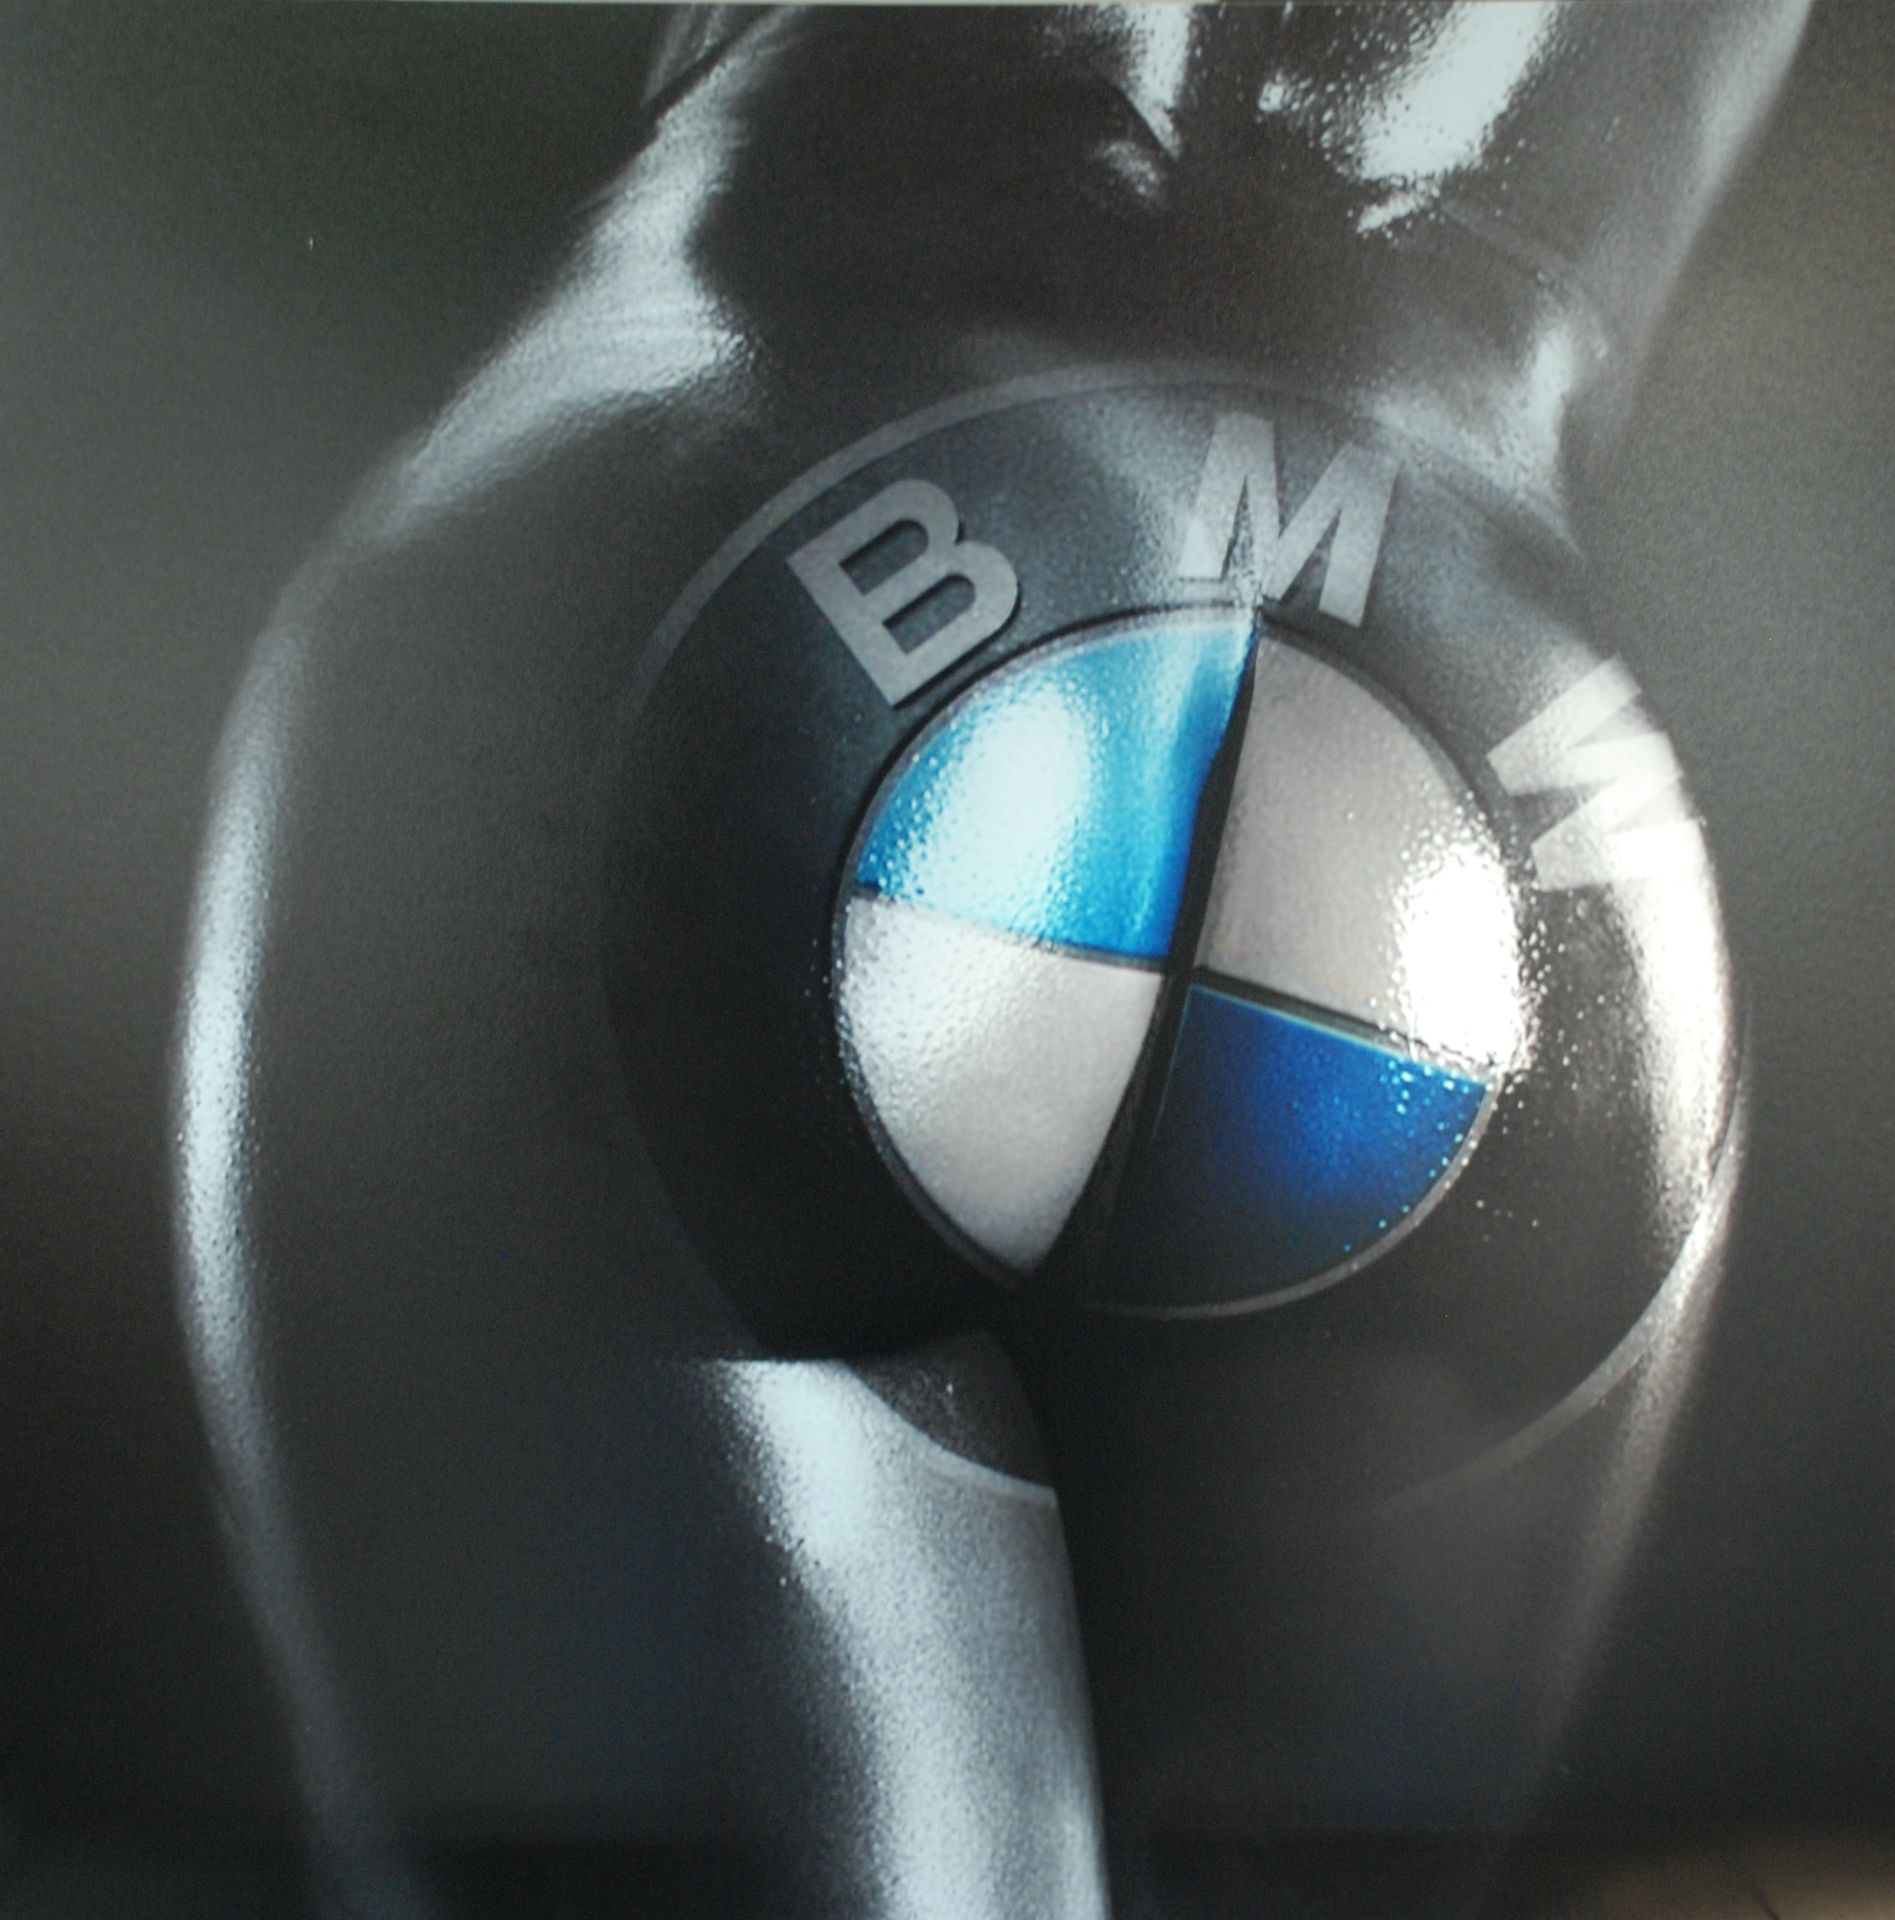 F2B F2B - Nalgas BMW

Digigrafía sobre aluminio

Firmado y numerado en el revers&hellip;